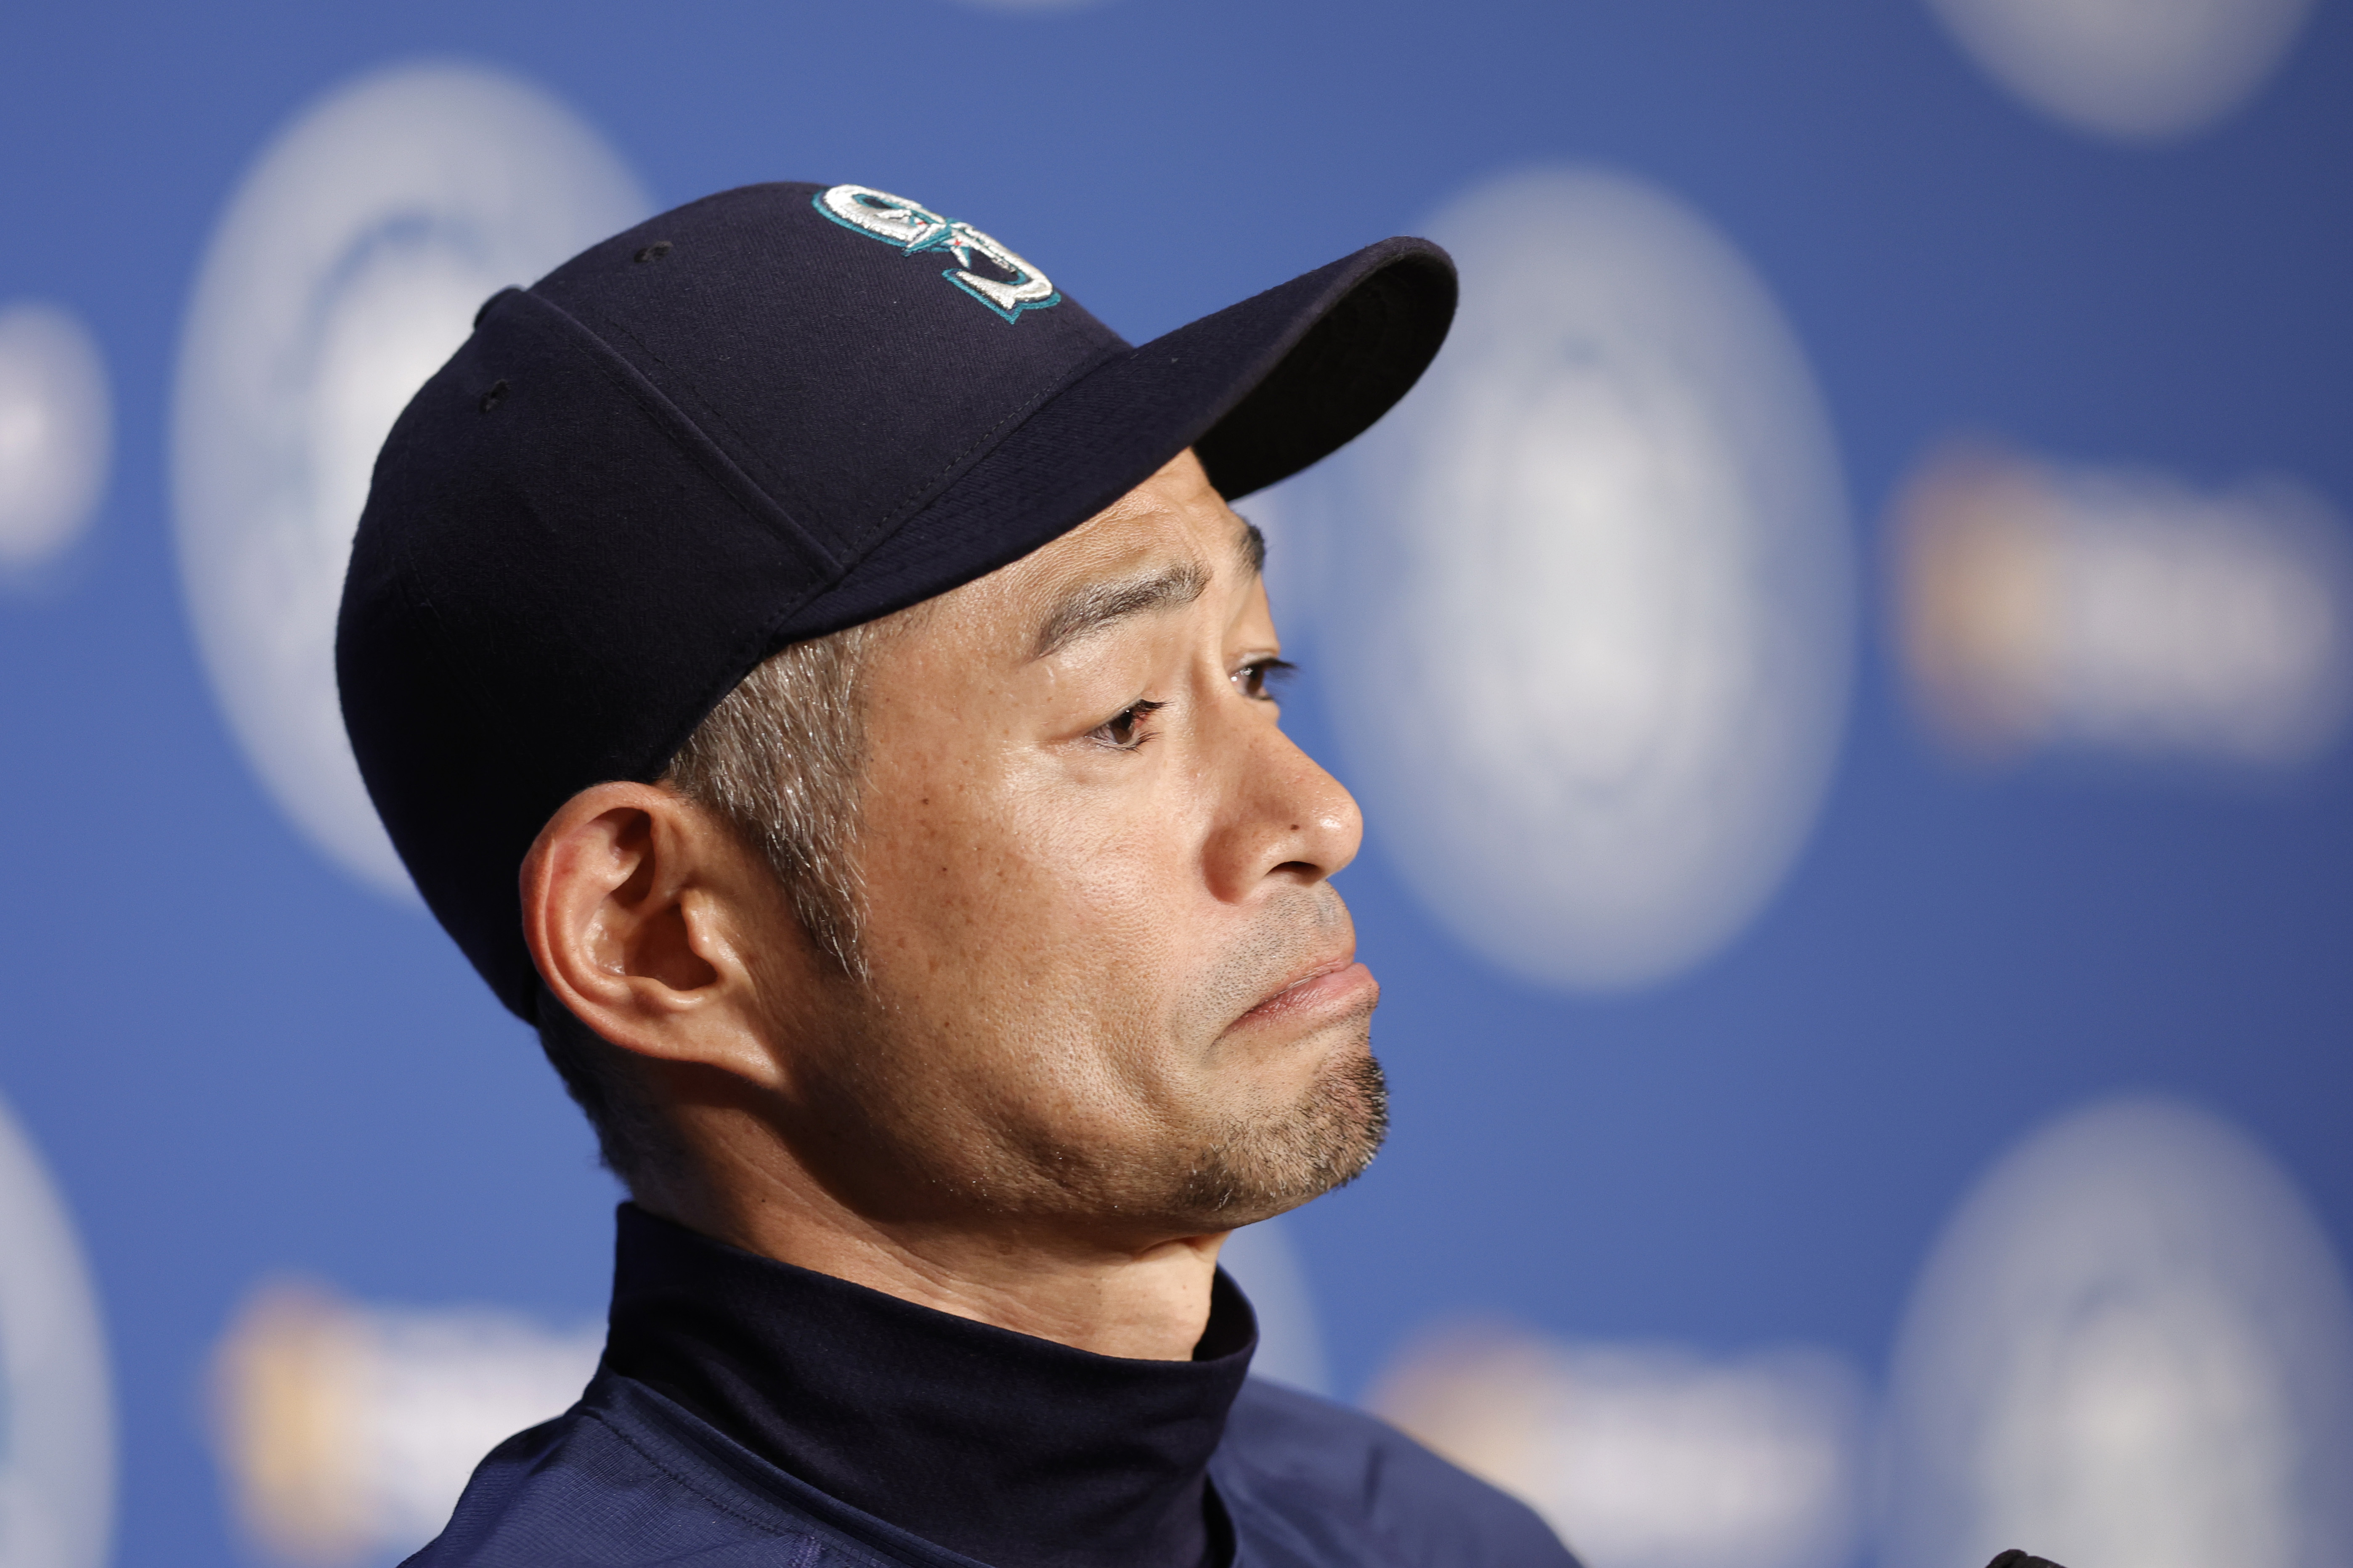 Ichiro Suzuki los Marineros Seattle in 2023